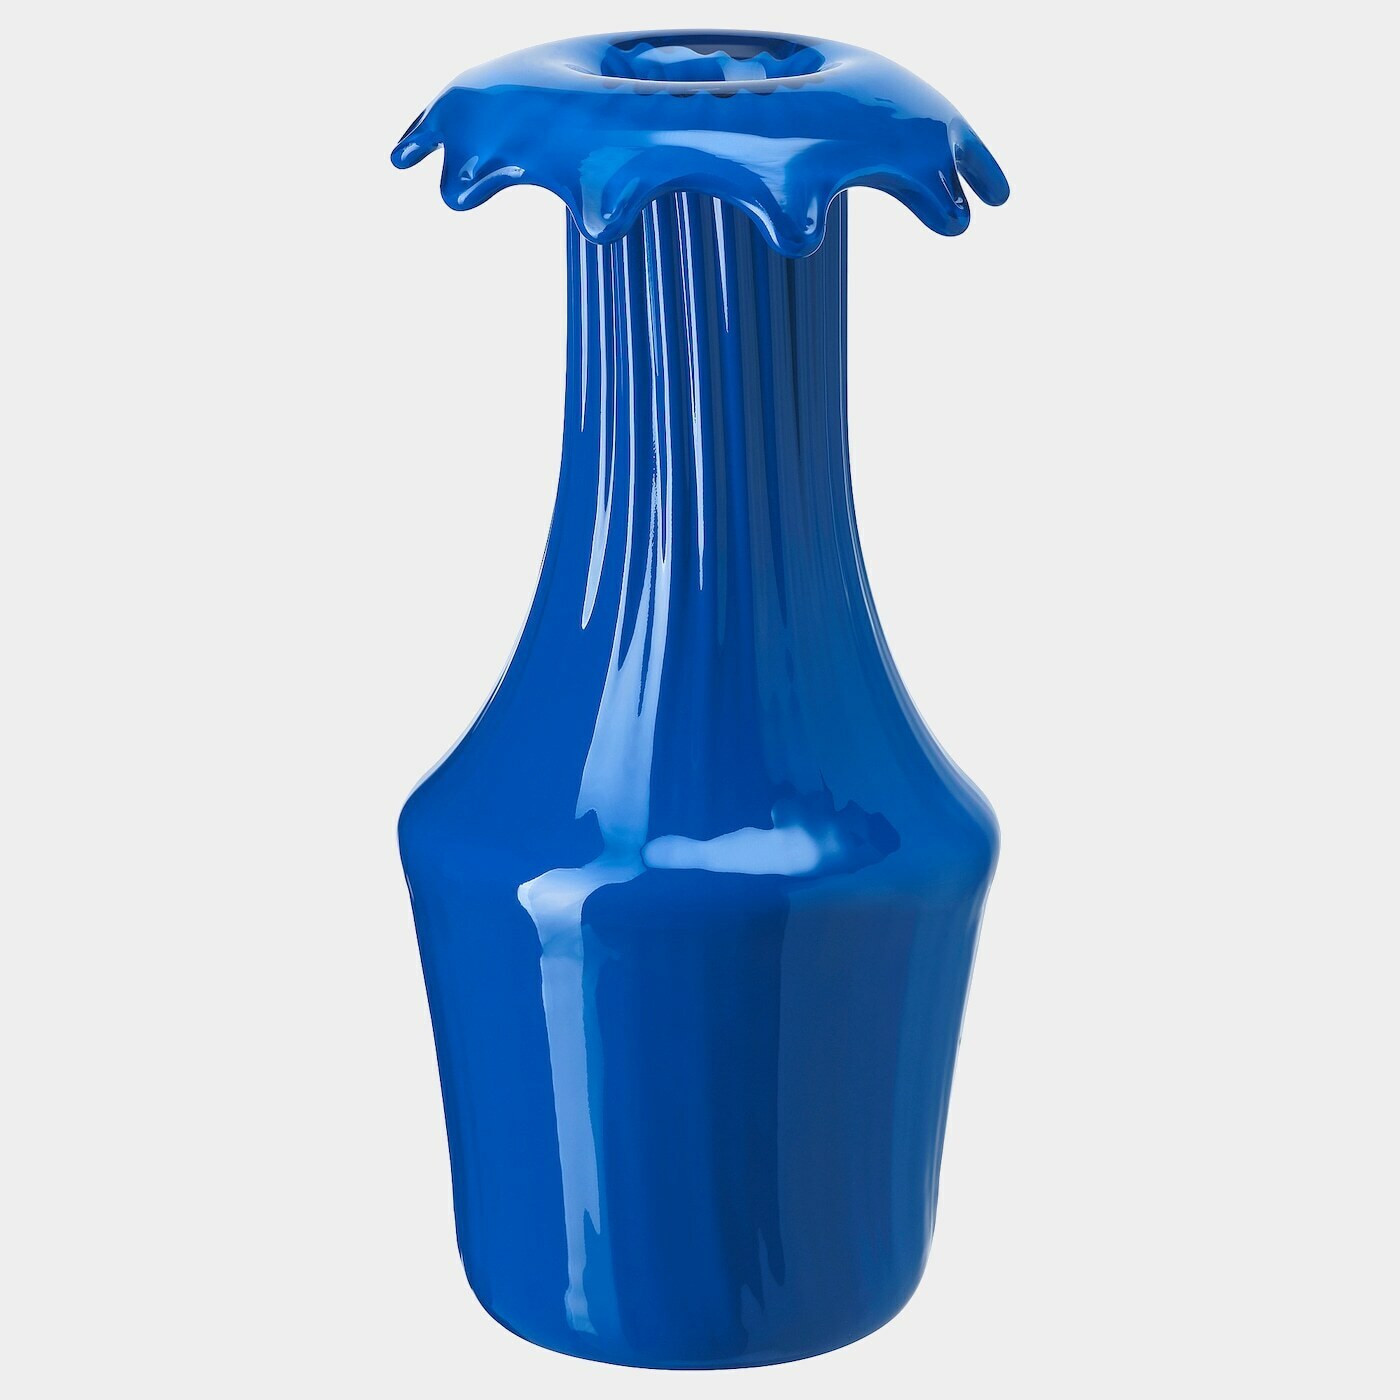 KARISMATISK Vase  -  - Möbel Ideen für dein Zuhause von Home Trends. Möbel Trends von Social Media Influencer für dein Skandi Zuhause.